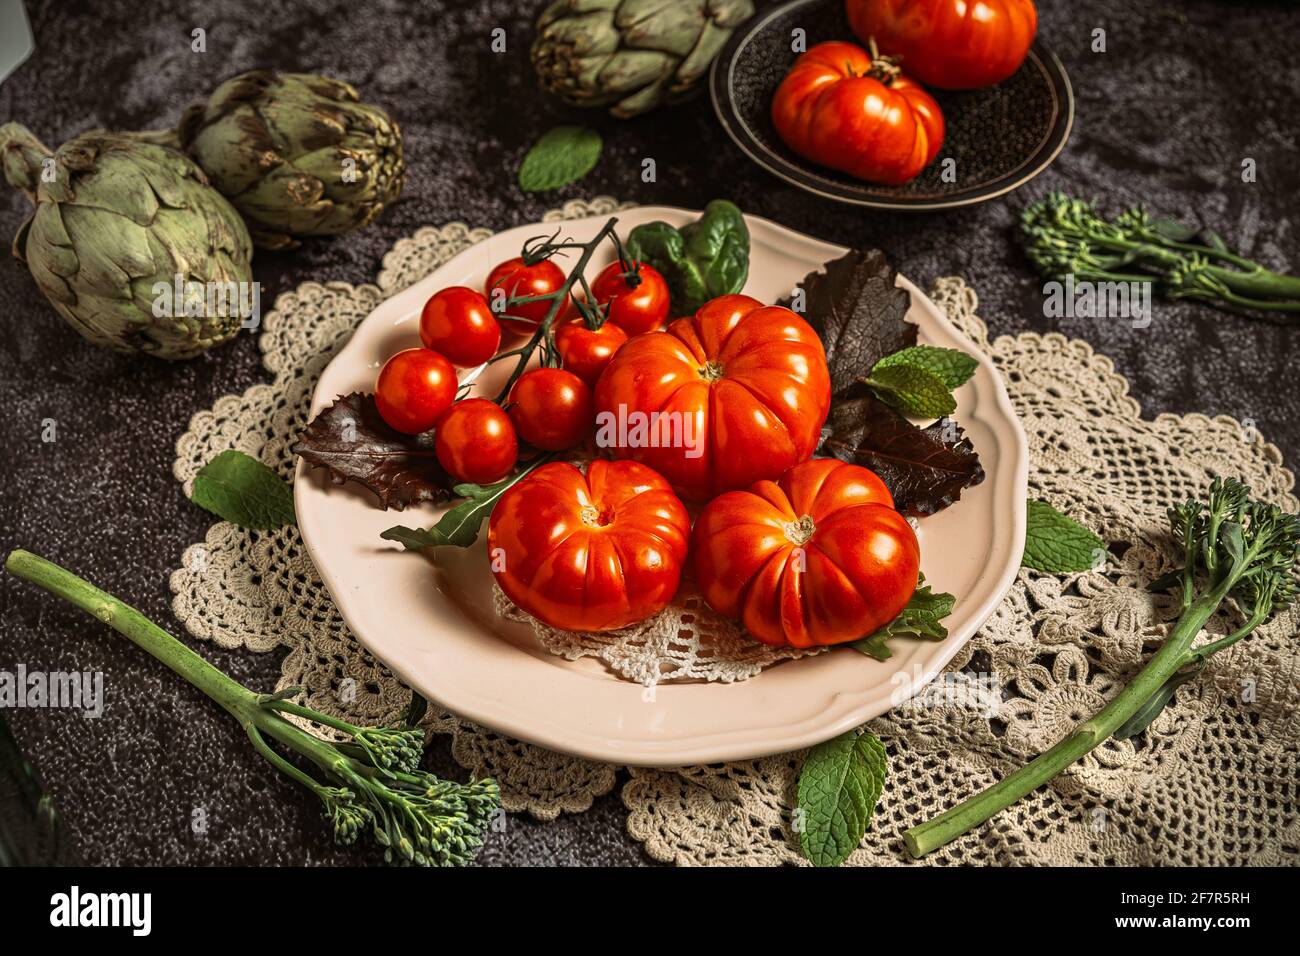 Moody fotografia di cibo scuro di pomodori raf freschi, bimi e carciofi. Immagine di natura morta con un aspetto vintage e uno sfondo nero. Foto Stock